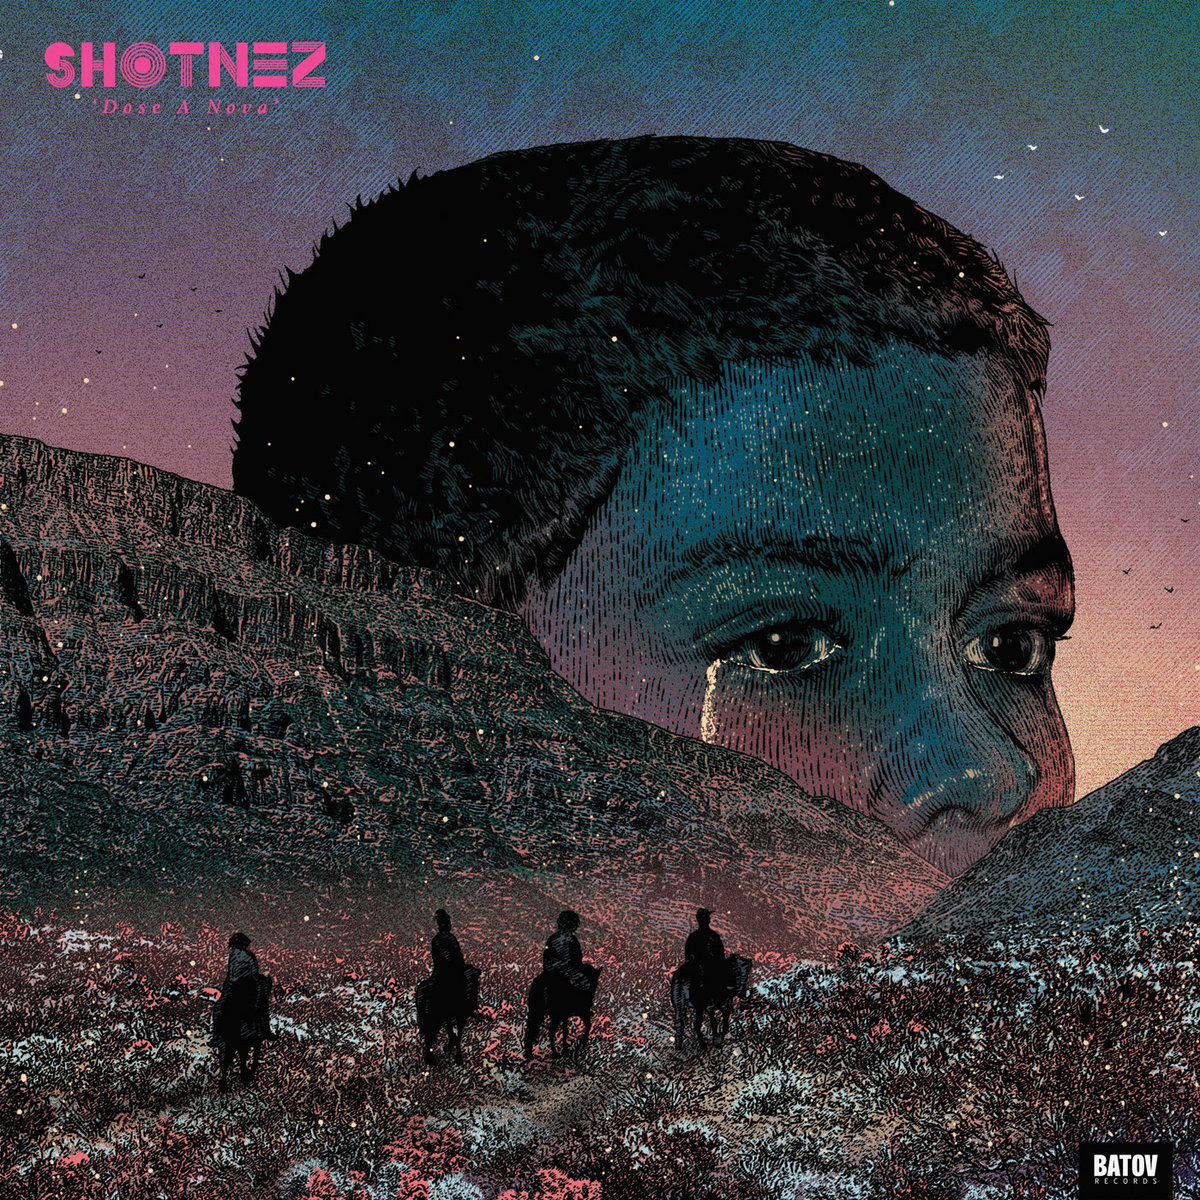 Shotnez - Dose A Nova Digital Cover